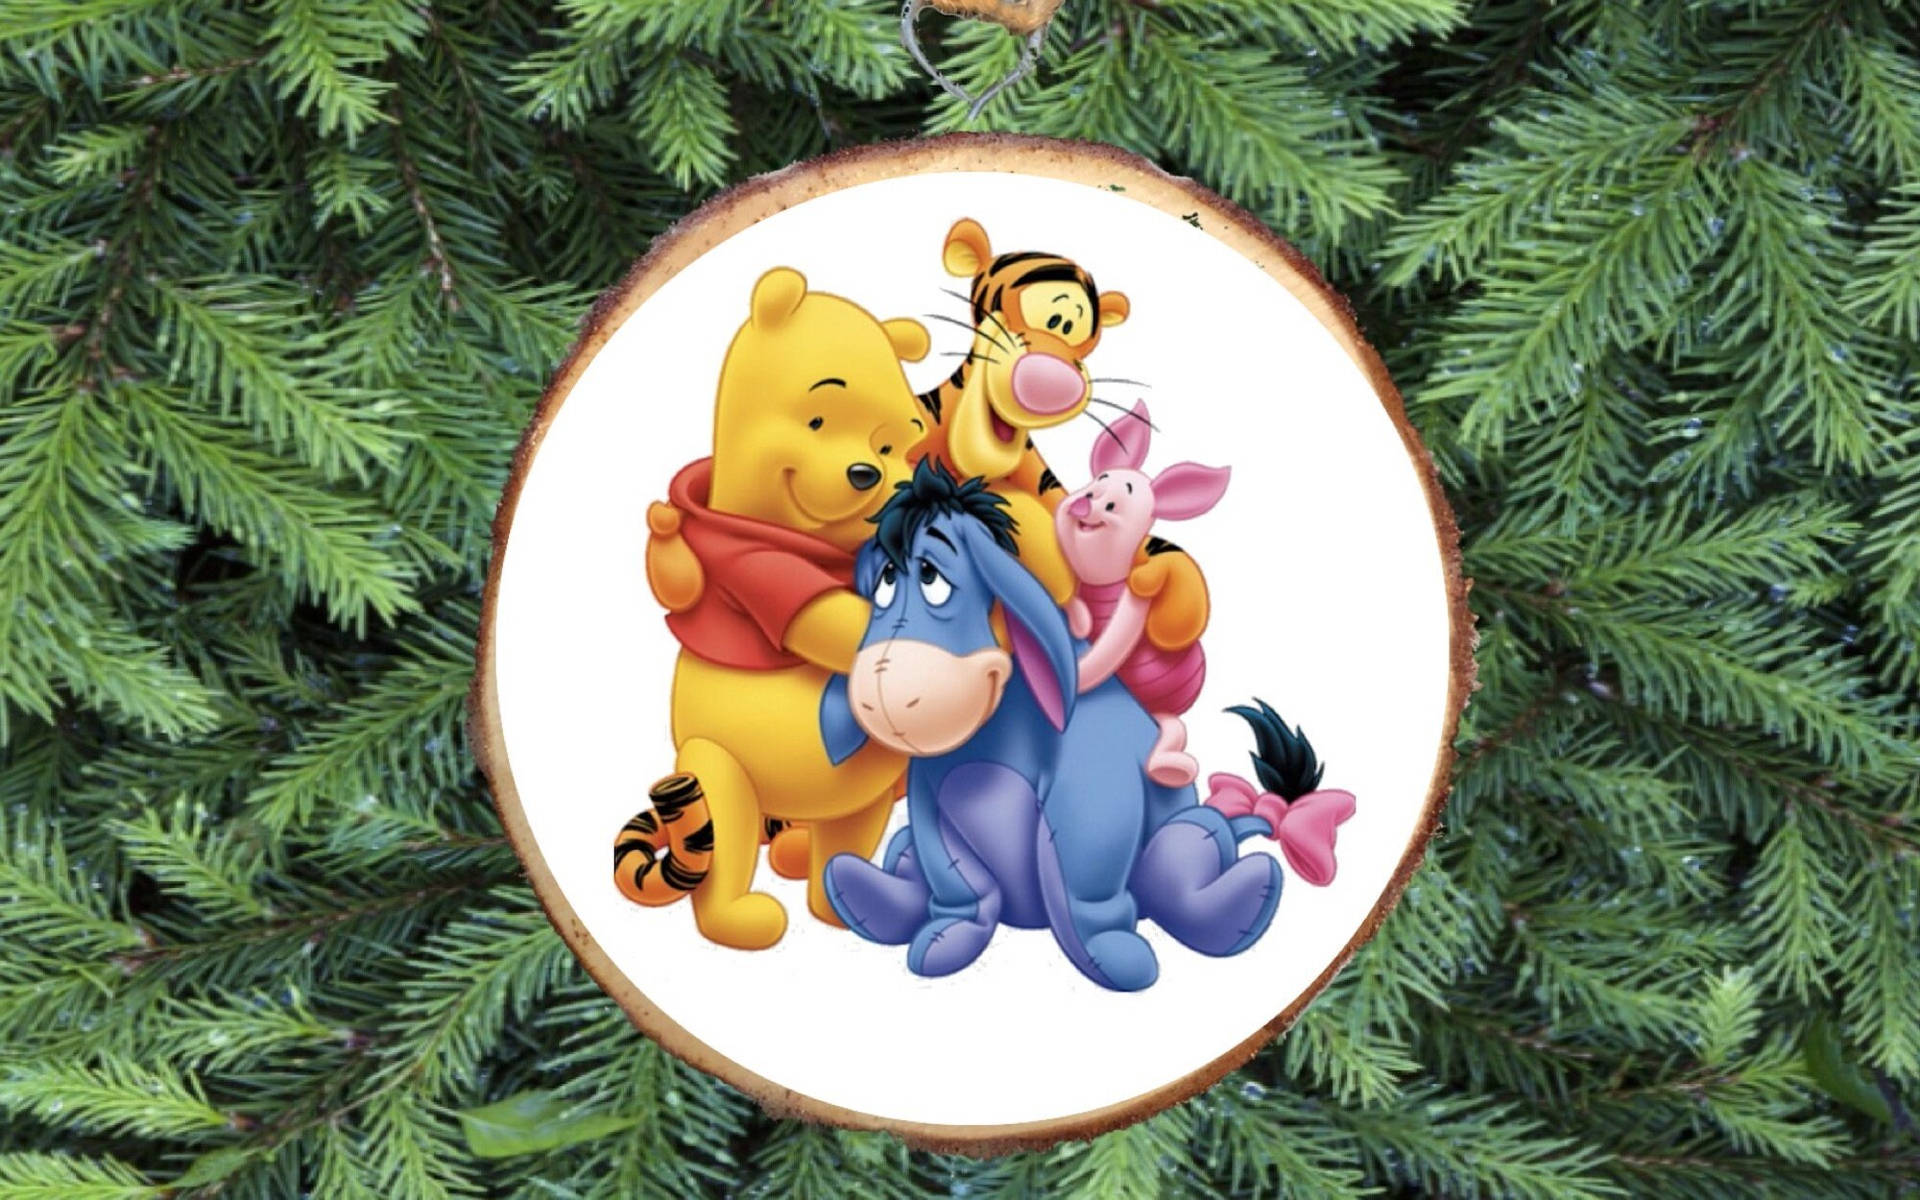 Verbreitefesttagsstimmung Und Genieße Weihnachten Mit Winnie Puuh Und Der Gang! Wallpaper